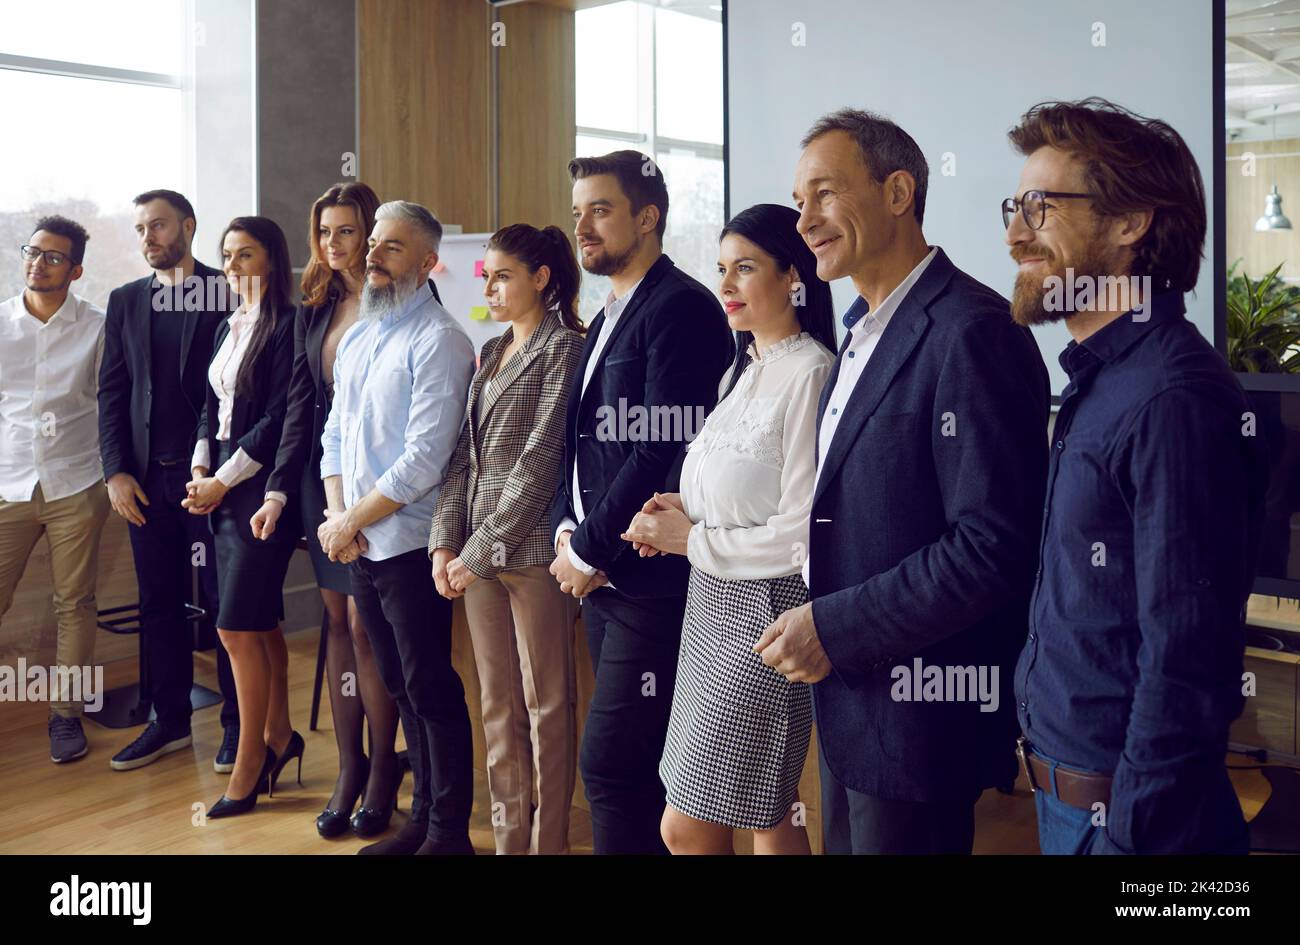 Professionelle Geschäftsleute Männer und Frauen unterschiedlichen Alters stehen in einem Konferenzraum in Reihe Stockfoto